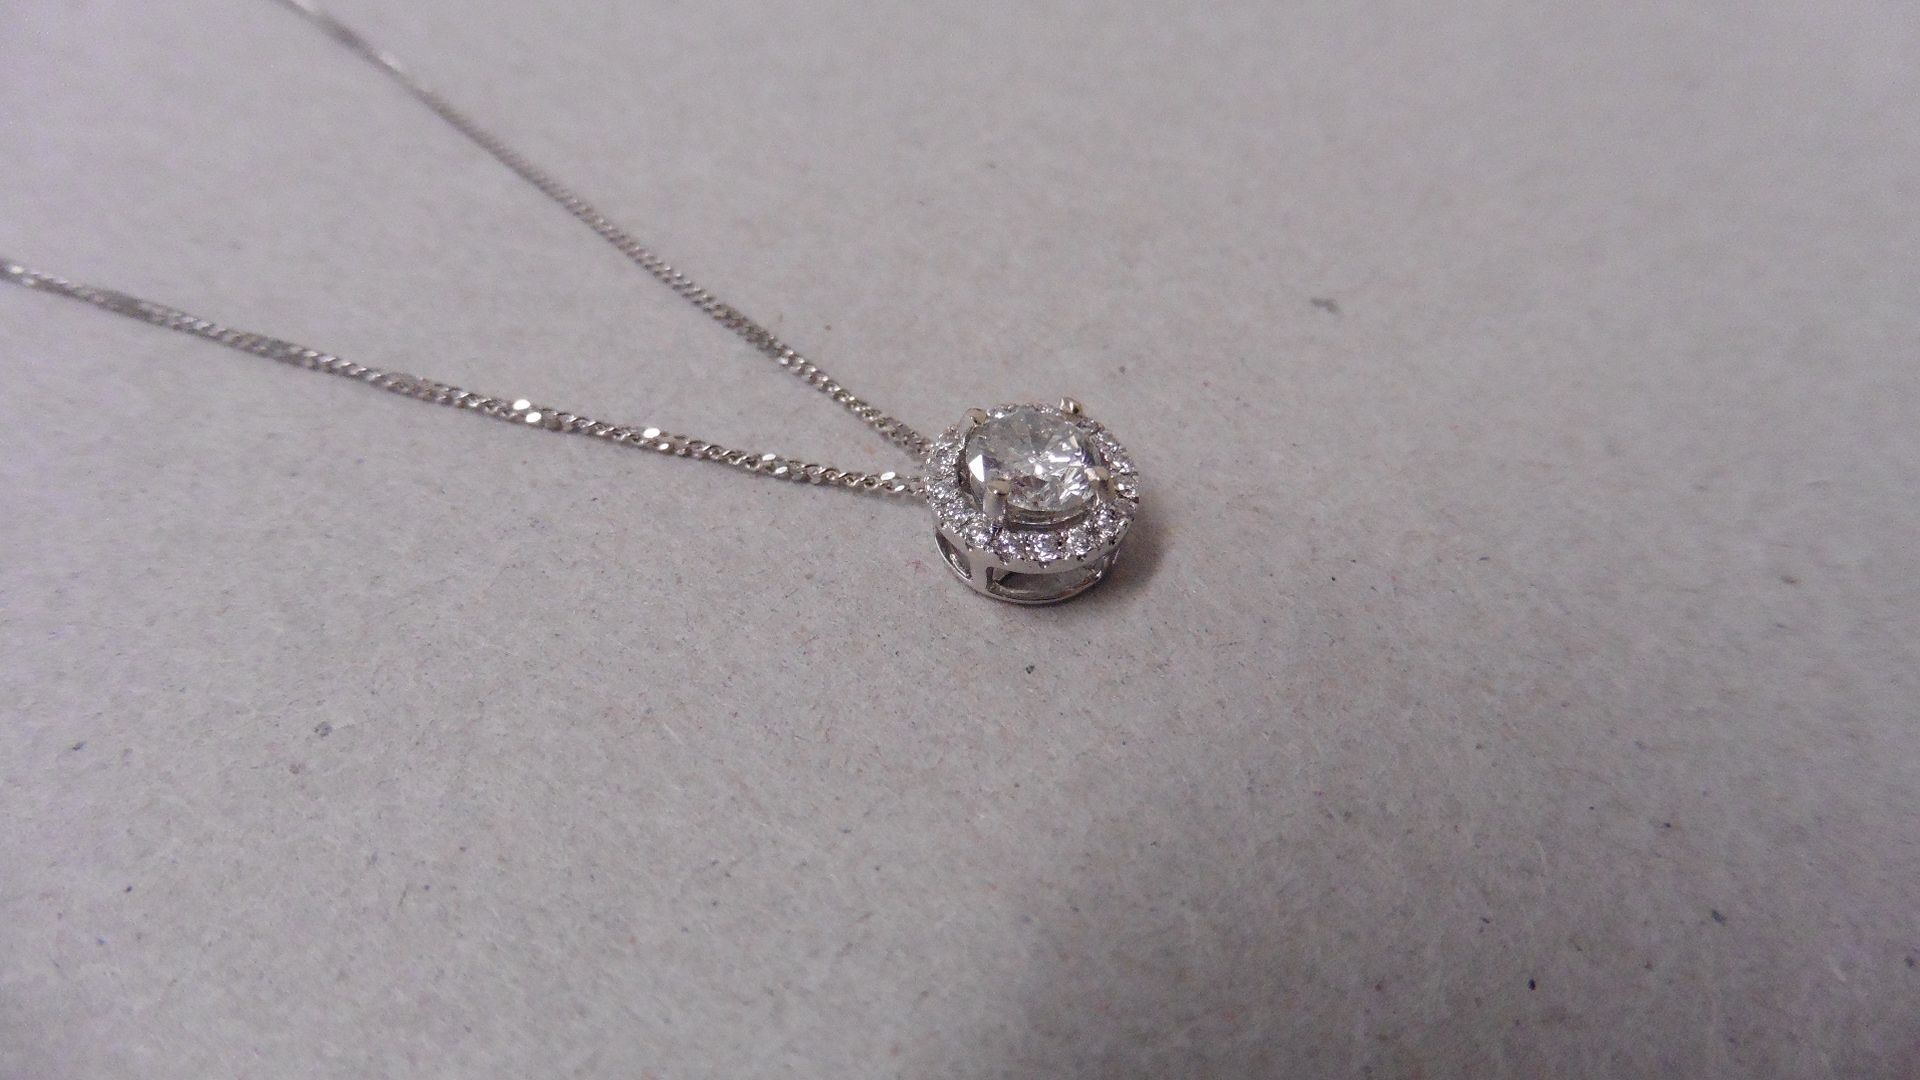 0.70ct diamond set pendant. Brilliant cut diamond I-J colour, si2-I1 clarity. Halo setting with - Image 2 of 4